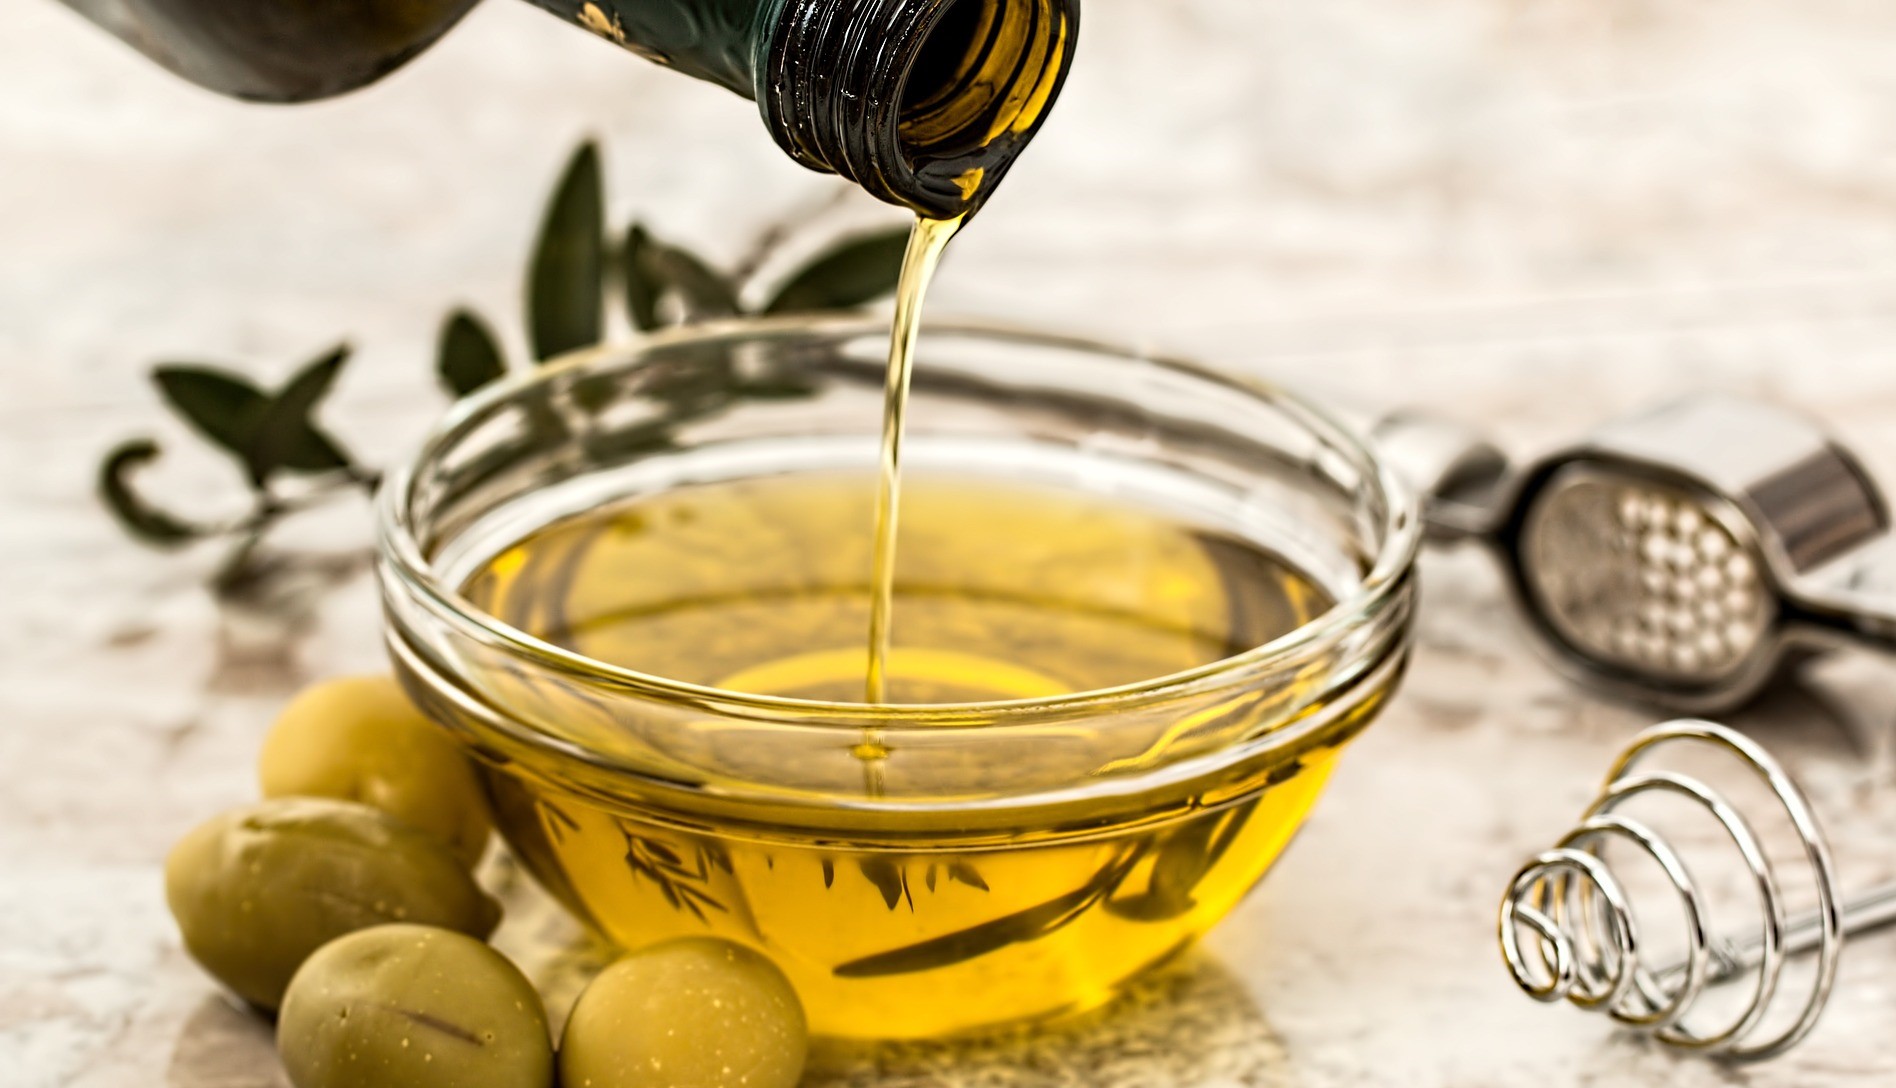 Prorogata l’autorizzazione per Kiwa Italia sui controlli DOP 'Brisighella' dell’olio extravergine di oliva